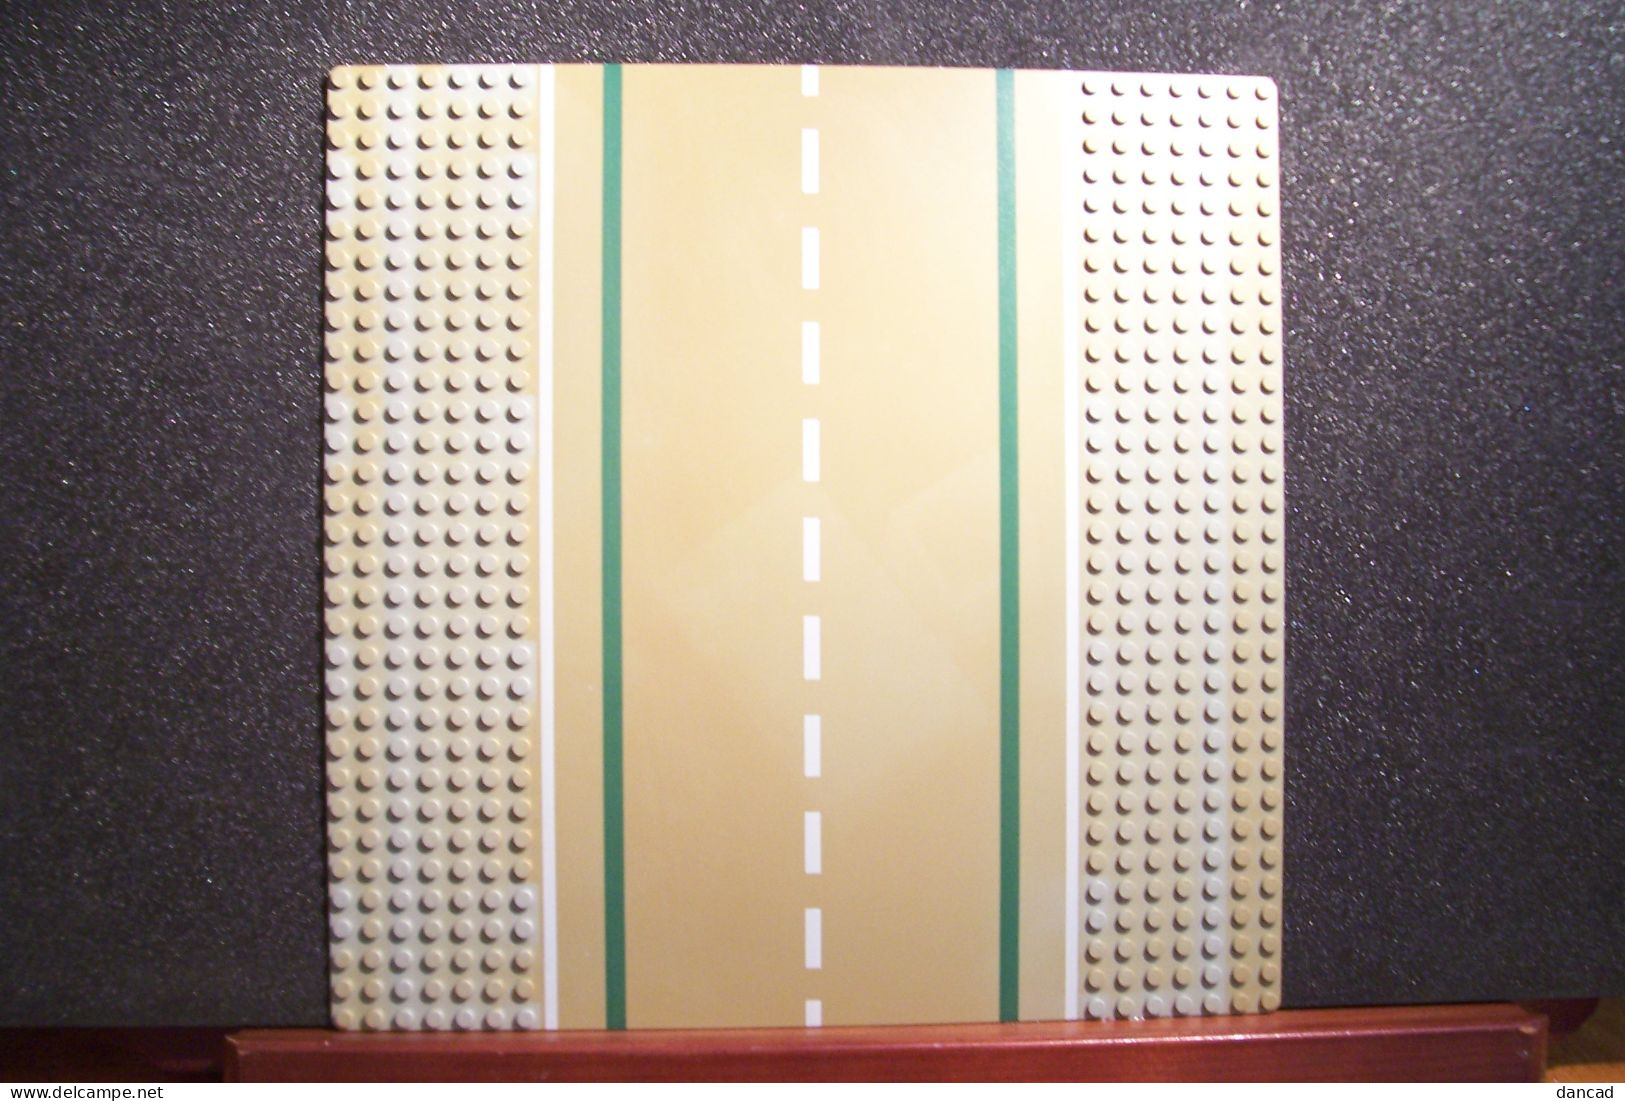 LOT De DEUX  MODULES  ( Plaques )  - LEGO - 255X255 Mm (  C . Lego Group ) - OCCASION -( Pas De Reflet Sur L'original ) - Non Classés